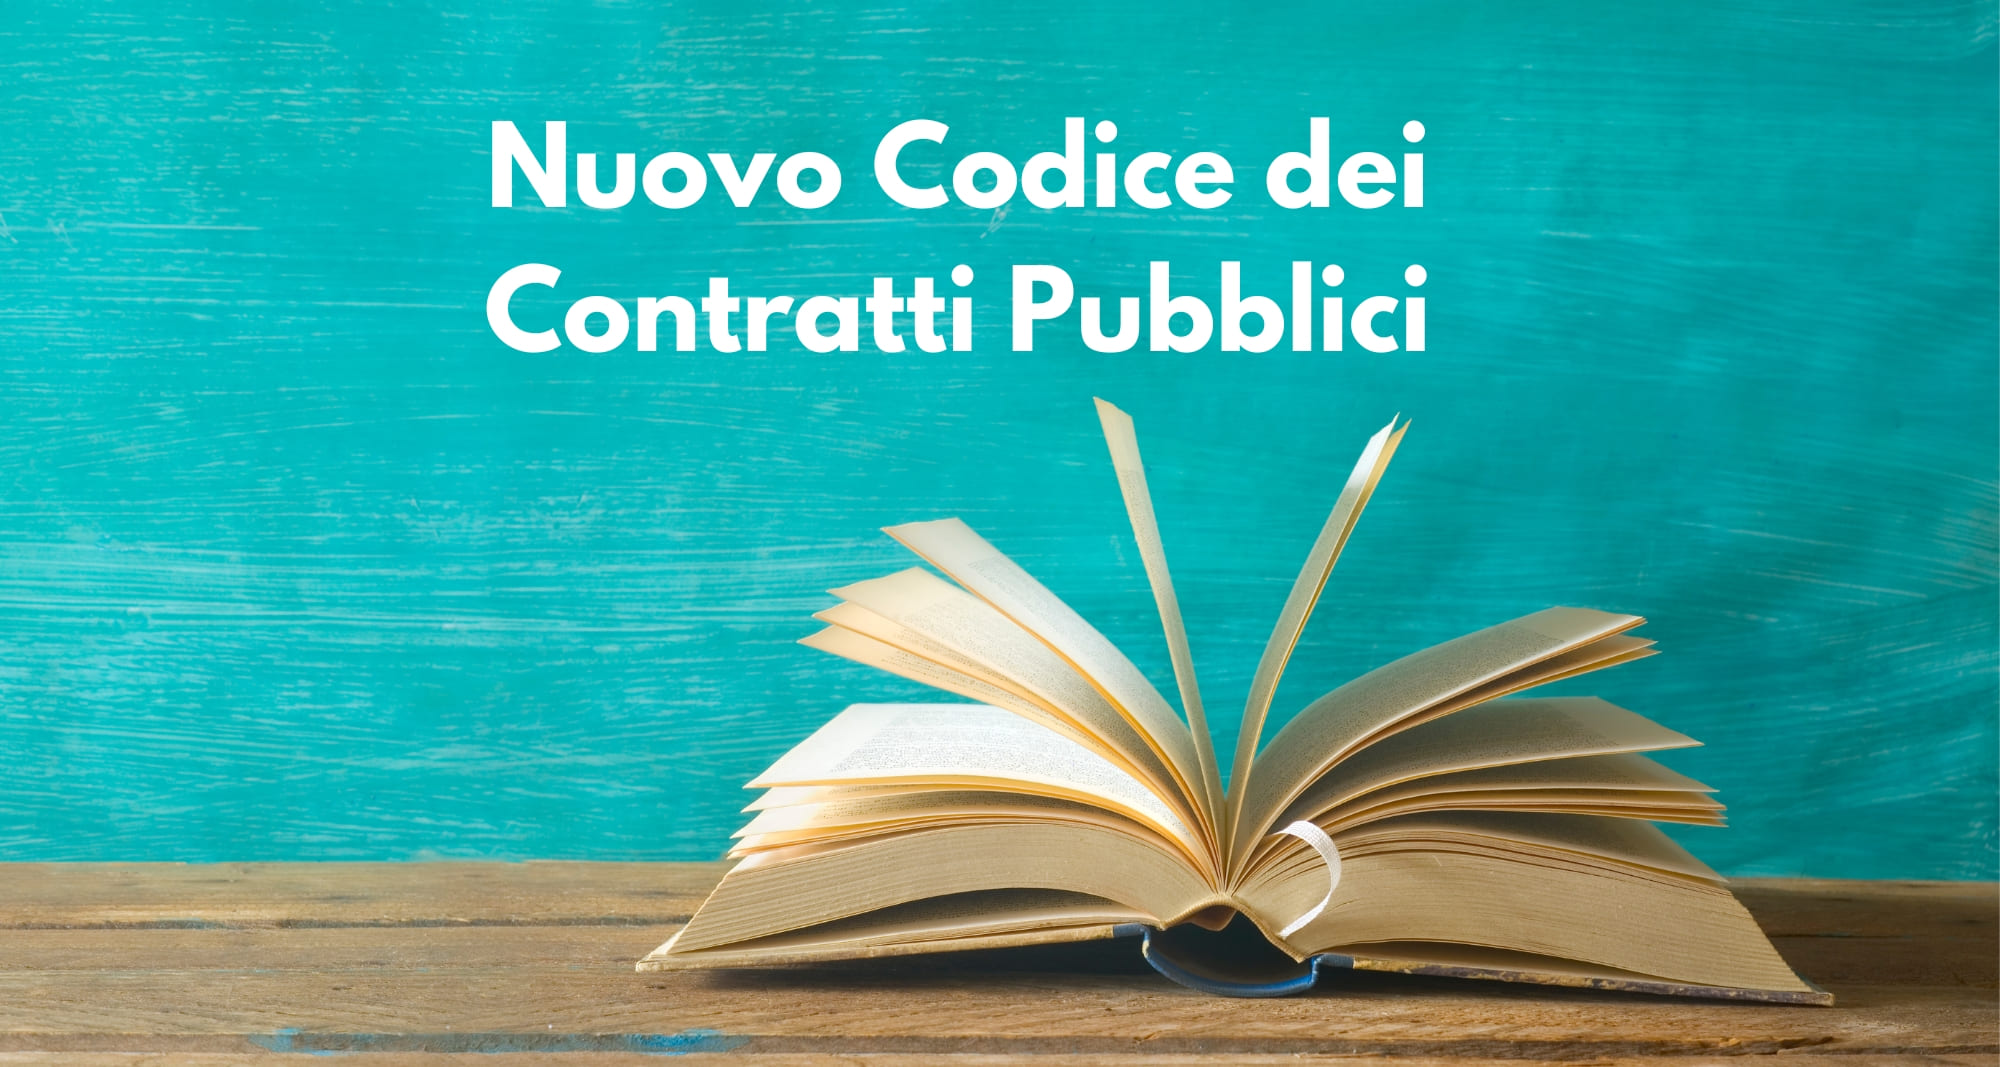 Le novità del Codice dei contratti pubblici – parte 1